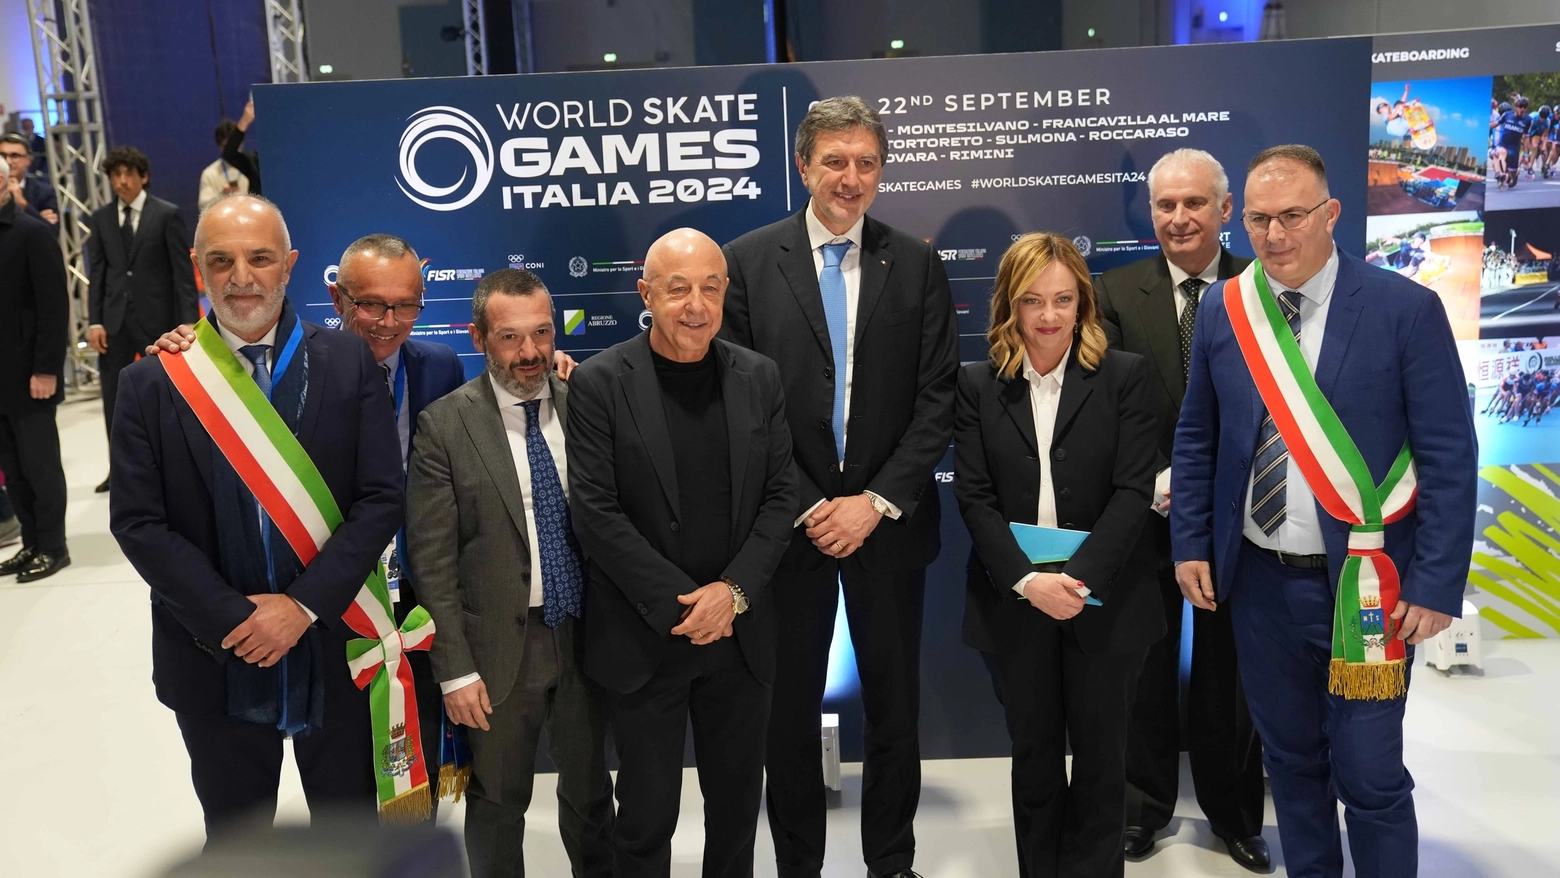 La presentazione degli World Skate Games con la premier Giorgia Meloni